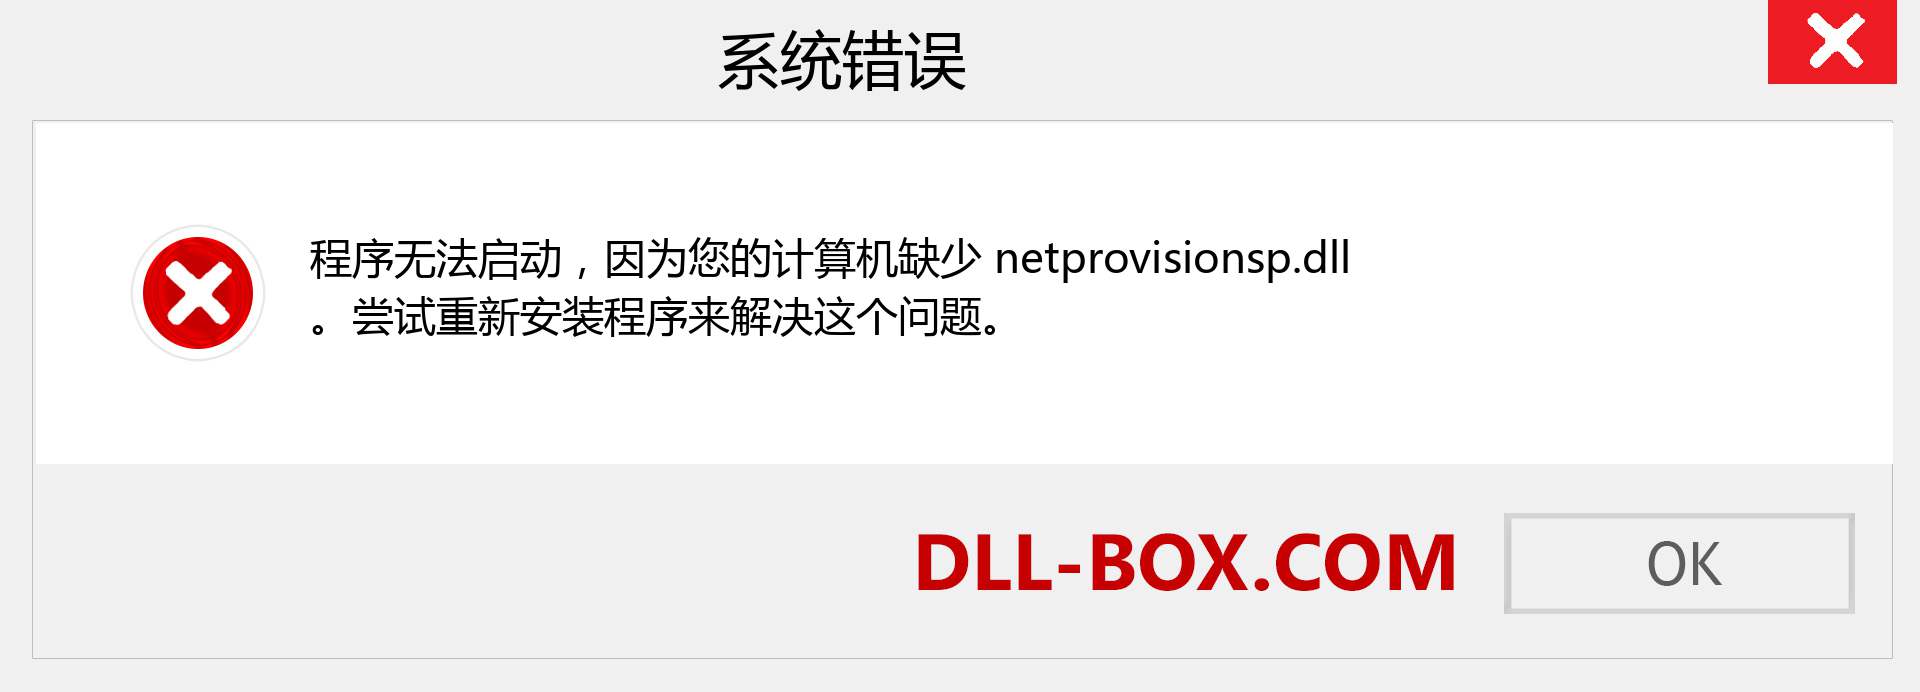 netprovisionsp.dll 文件丢失？。 适用于 Windows 7、8、10 的下载 - 修复 Windows、照片、图像上的 netprovisionsp dll 丢失错误